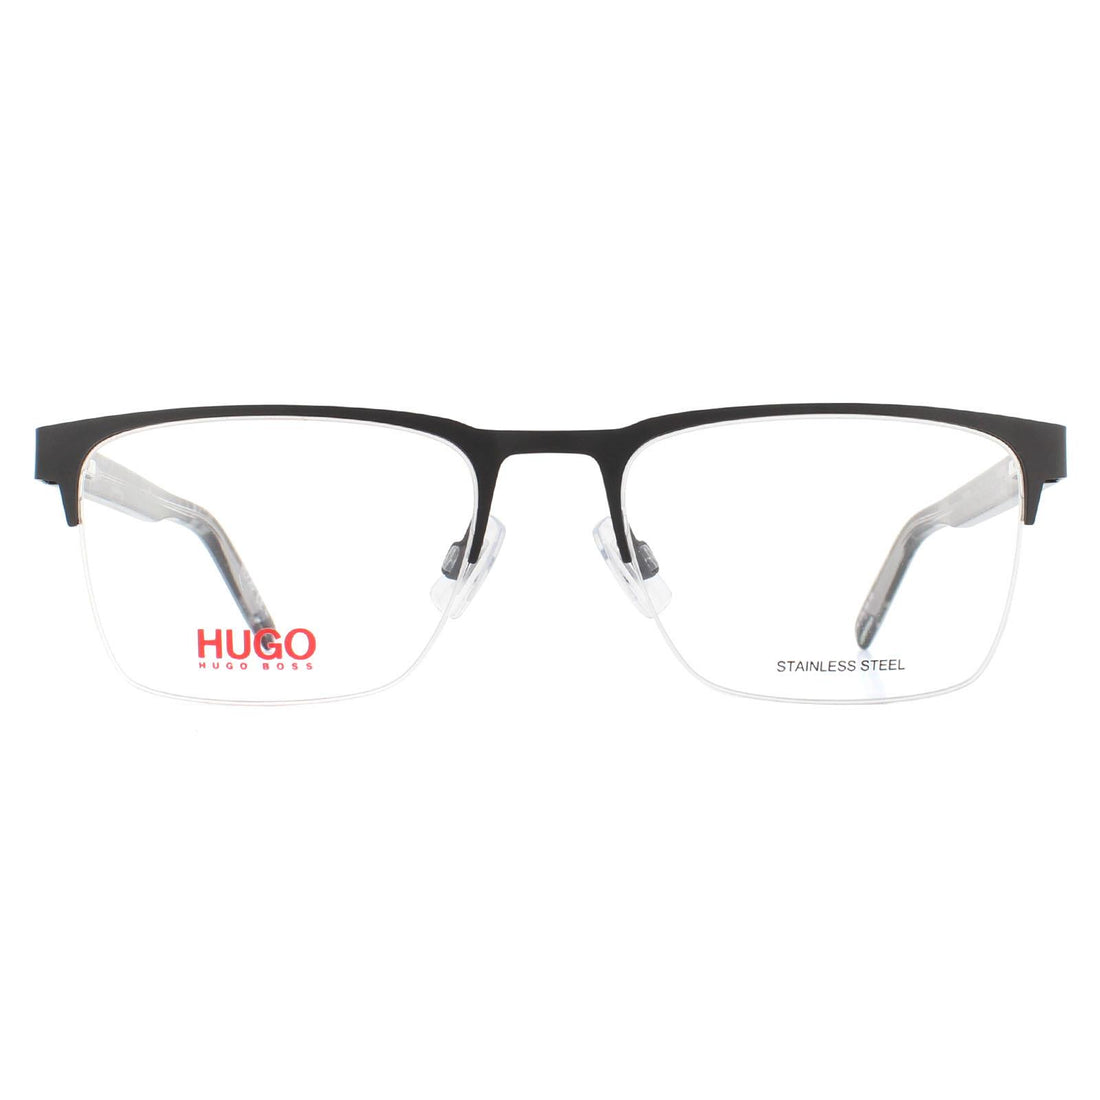 Hugo By Hugo Boss HG 1076 Glasses Frames Matte Black